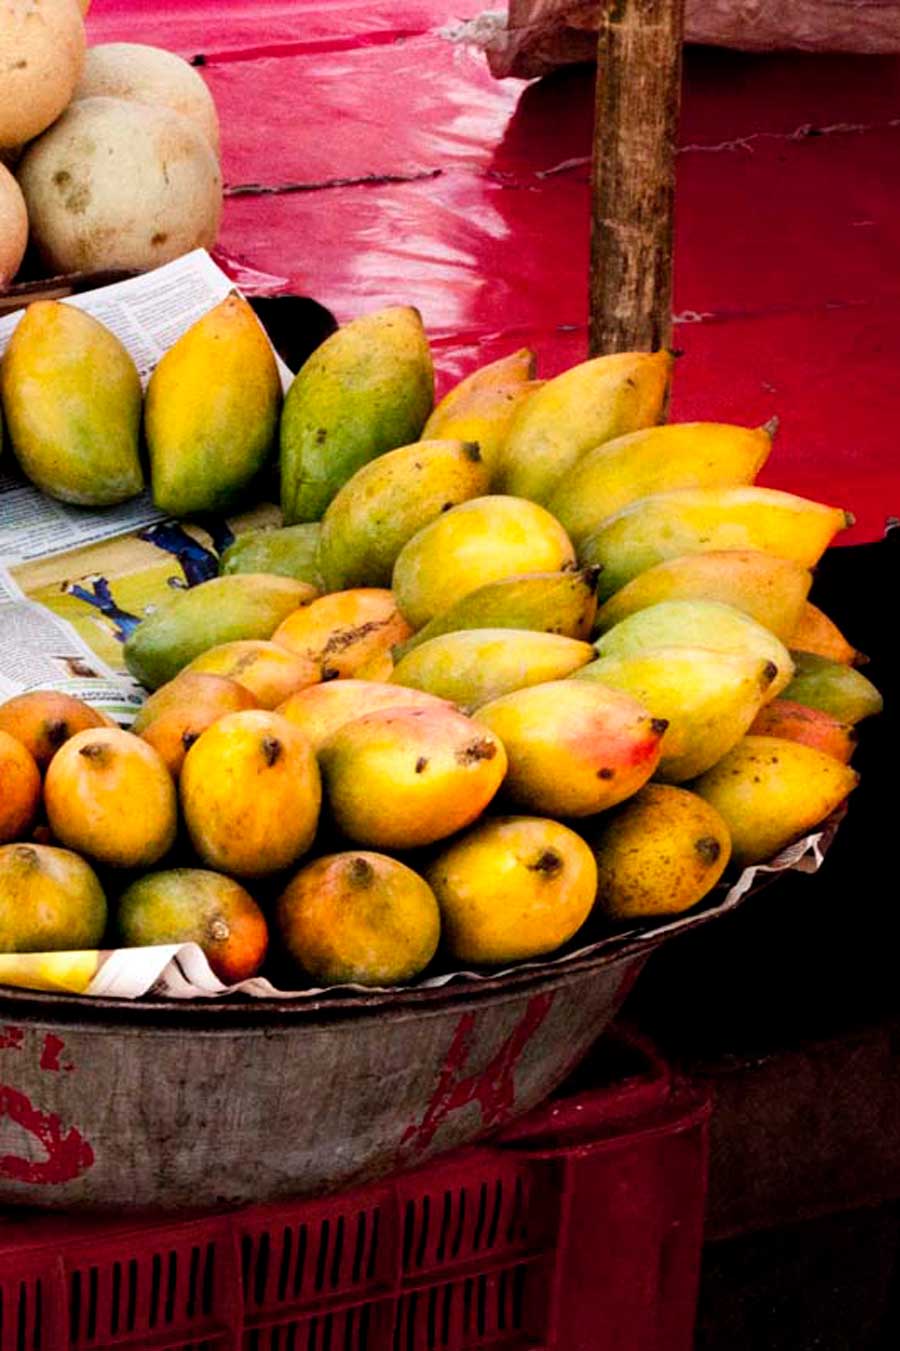 Plateau de mangues fraîches au marché